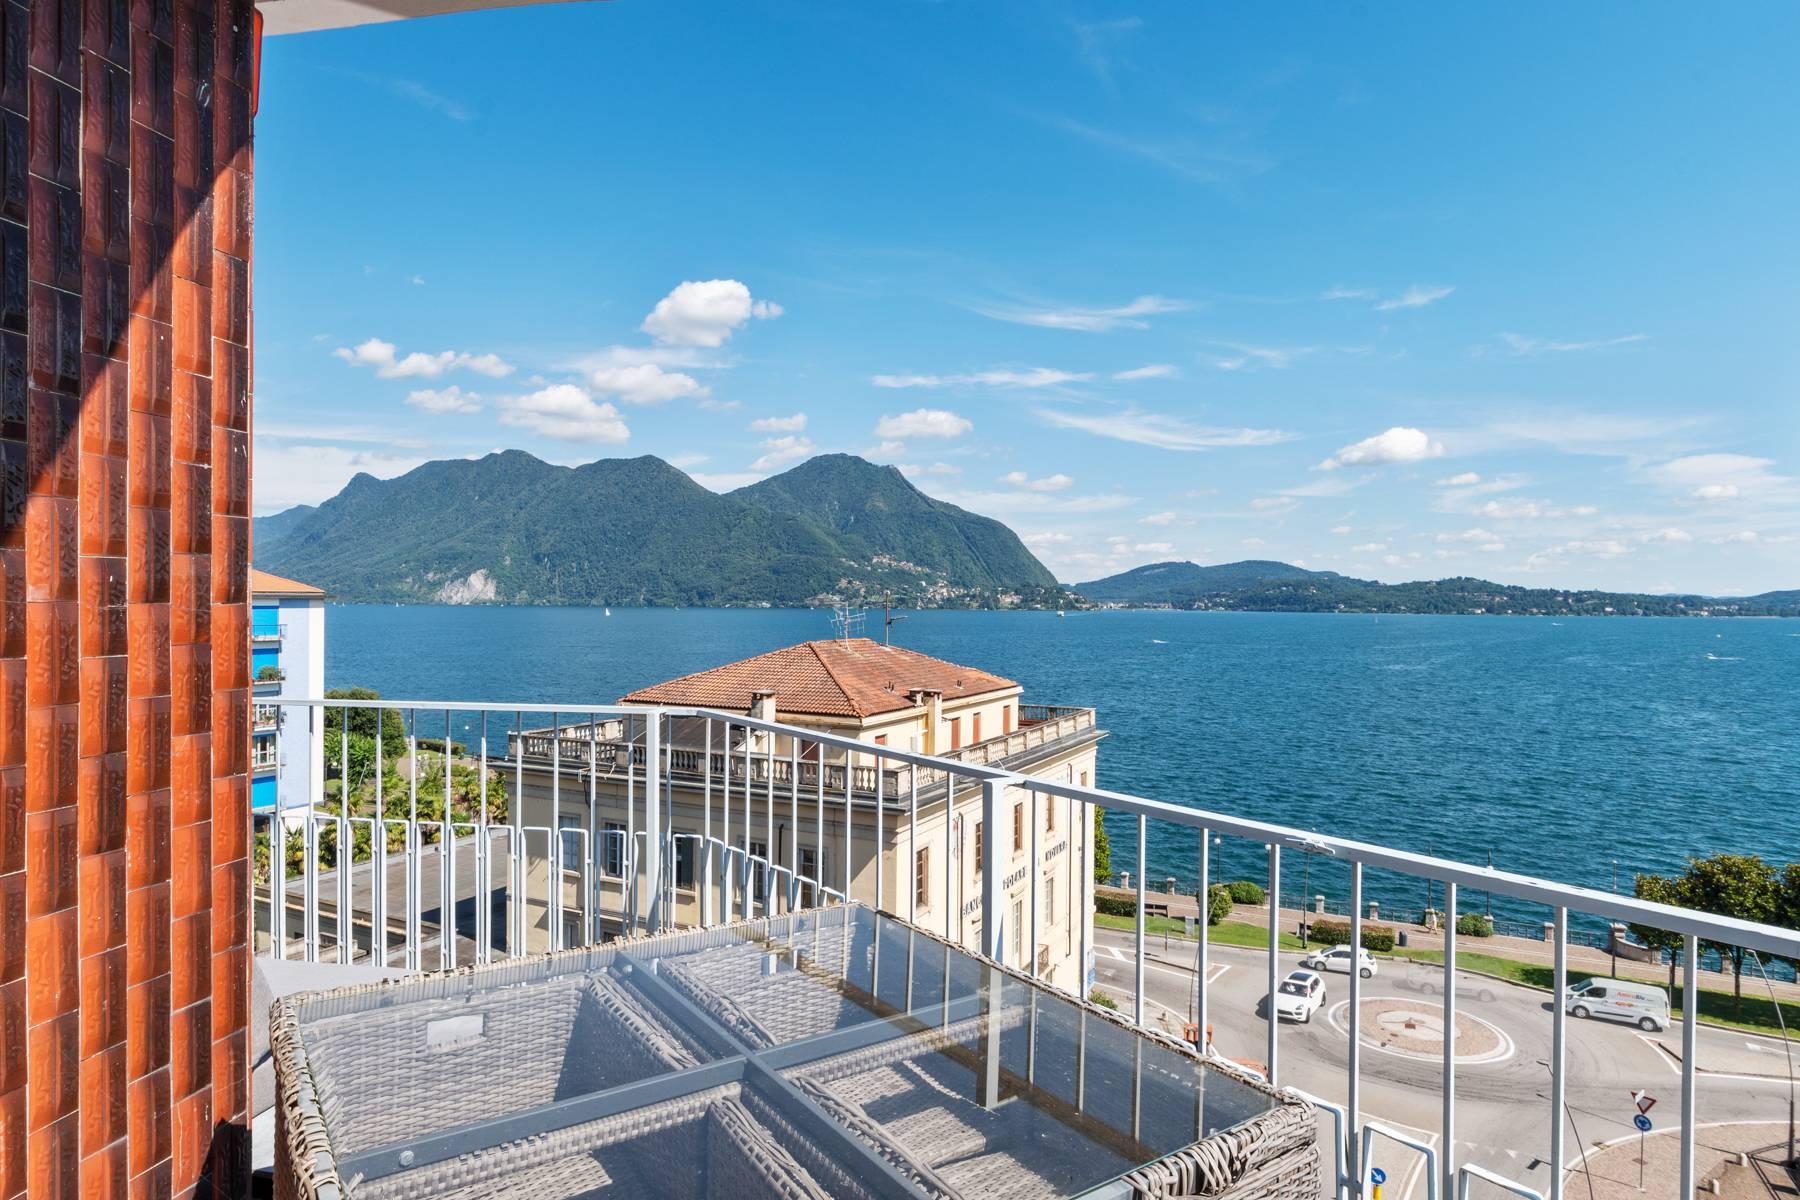 Attico mozzafiato con balcone e terrazza che dominano tutto il lago Maggiore situato nel centro di Intra - 3